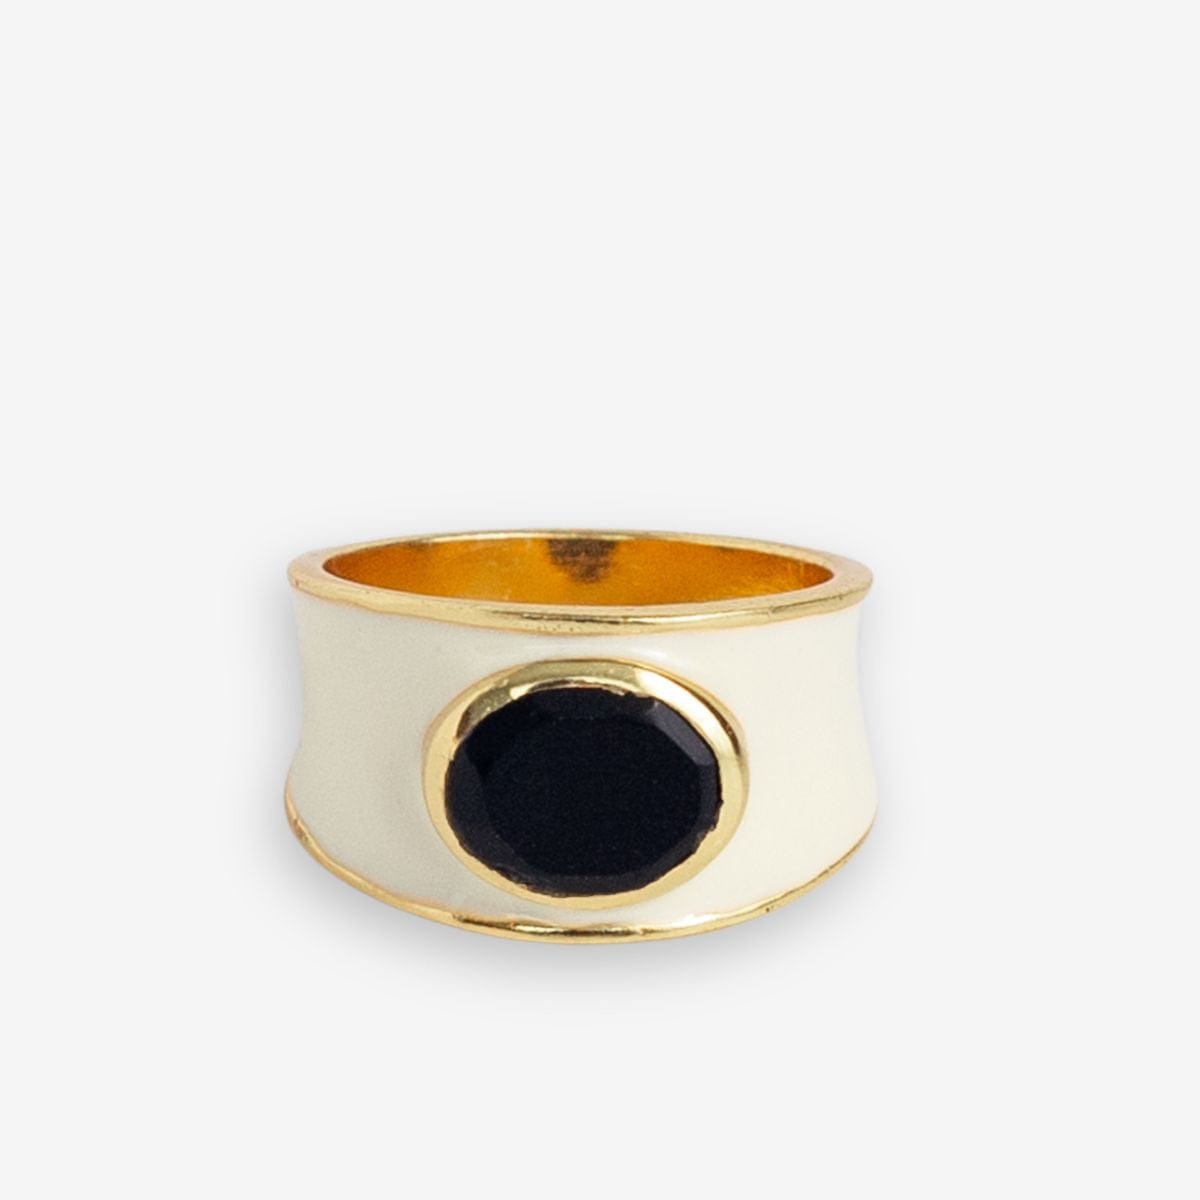 Hazel Oval Stone With Enamel Band Ring Ivory/Black Wholesale- Size 8